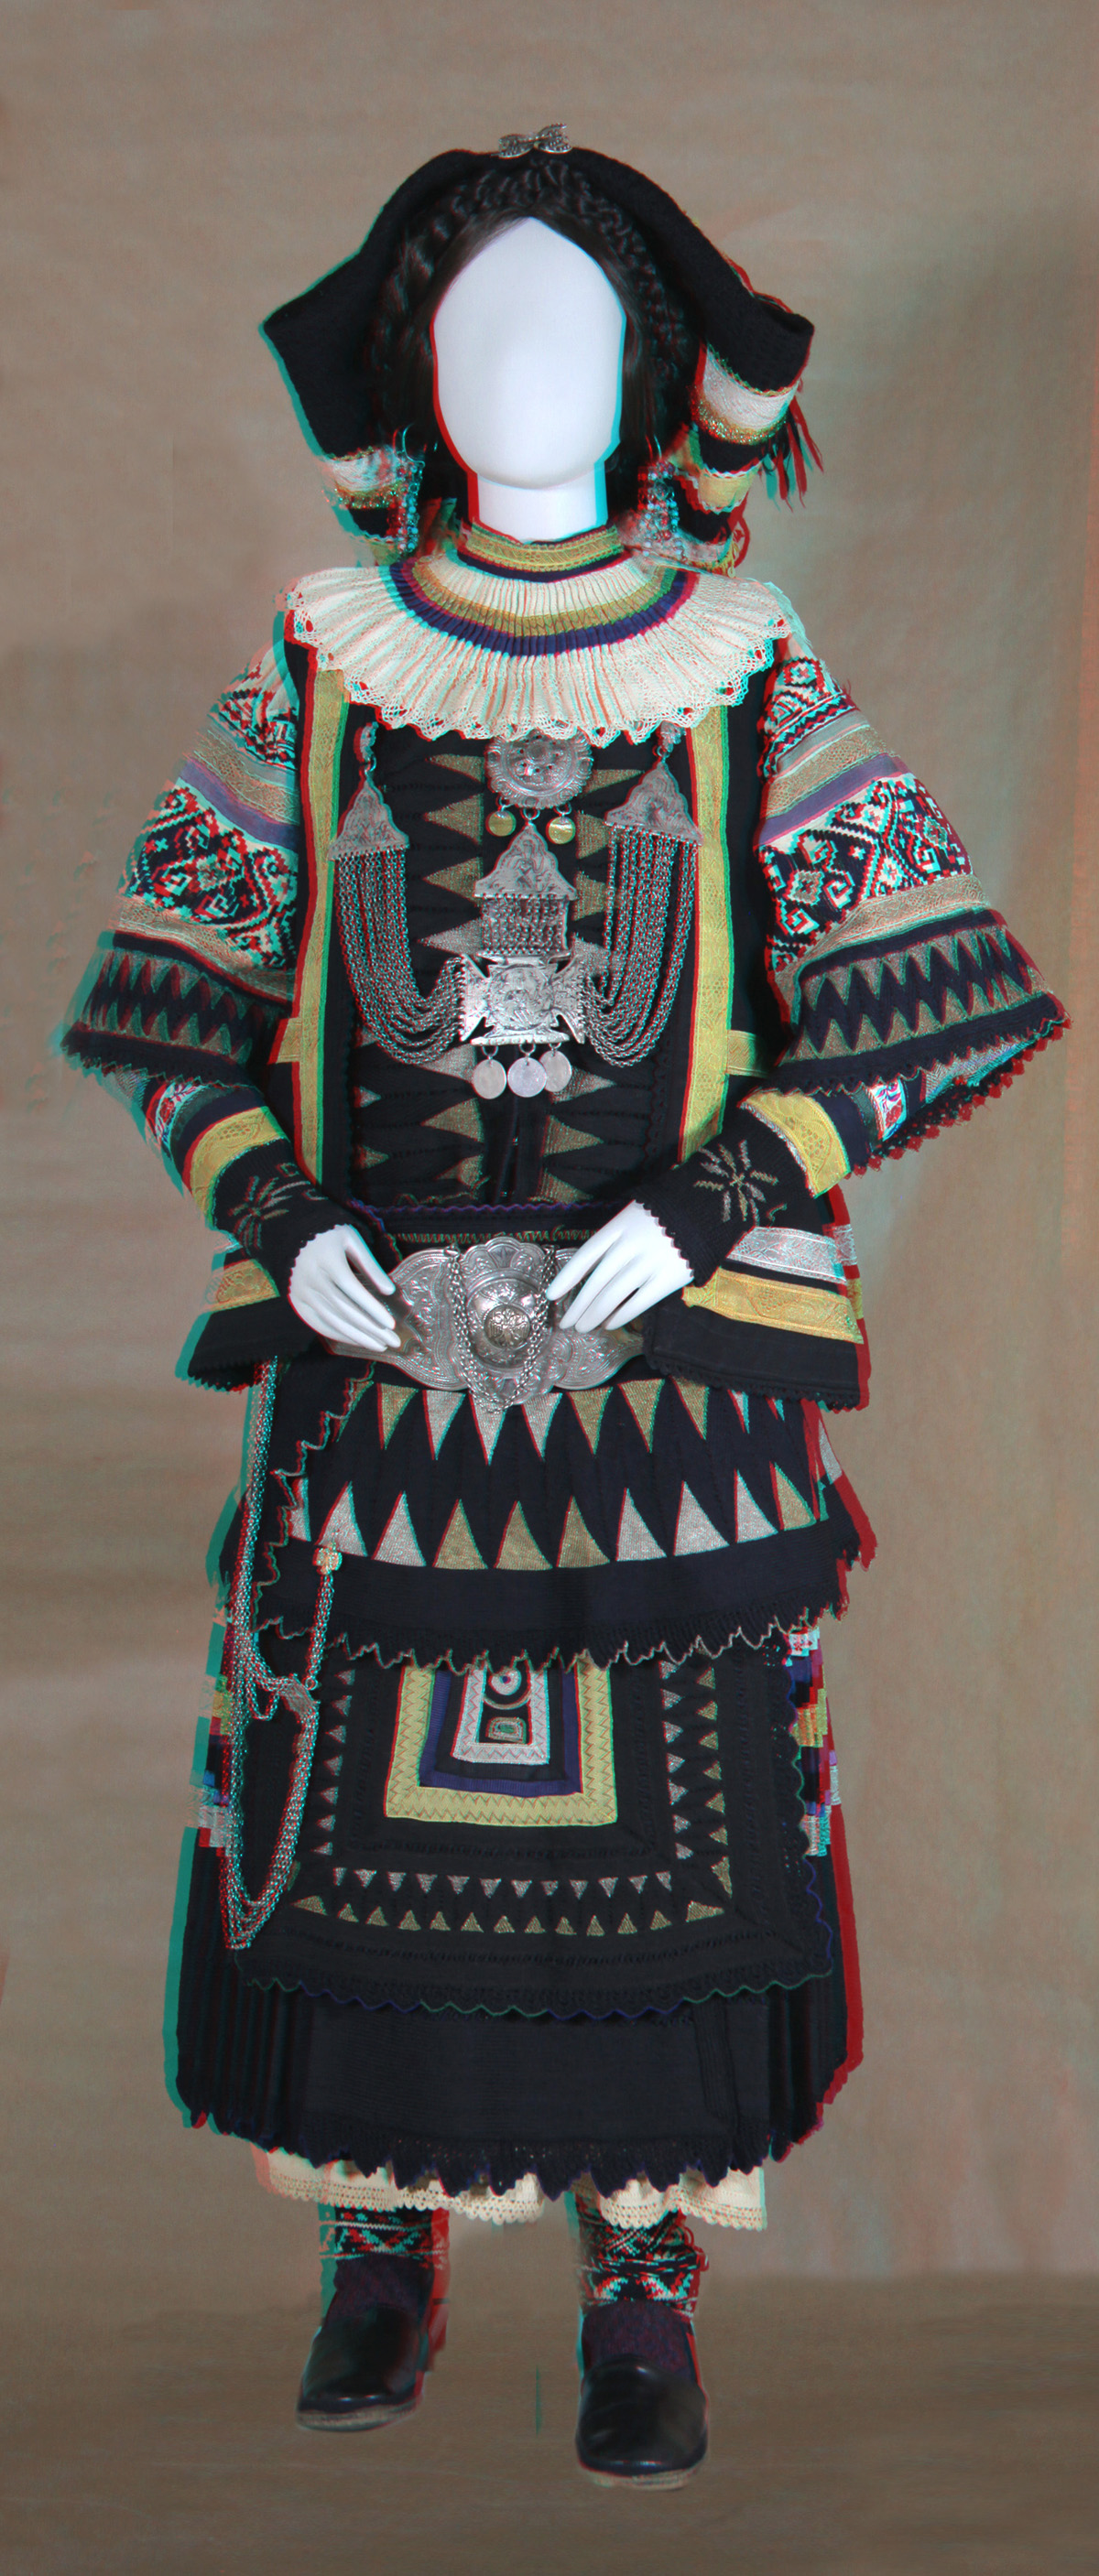 Κούκλα με γυναικεία φορεσιά Σαρακατσάνας Θράκης («Πολίτισσας») (από βιτρίνα Σαρακατσάνων στην αίθουσα Κεντρικής και Ανατολικής Μακεδονίας)